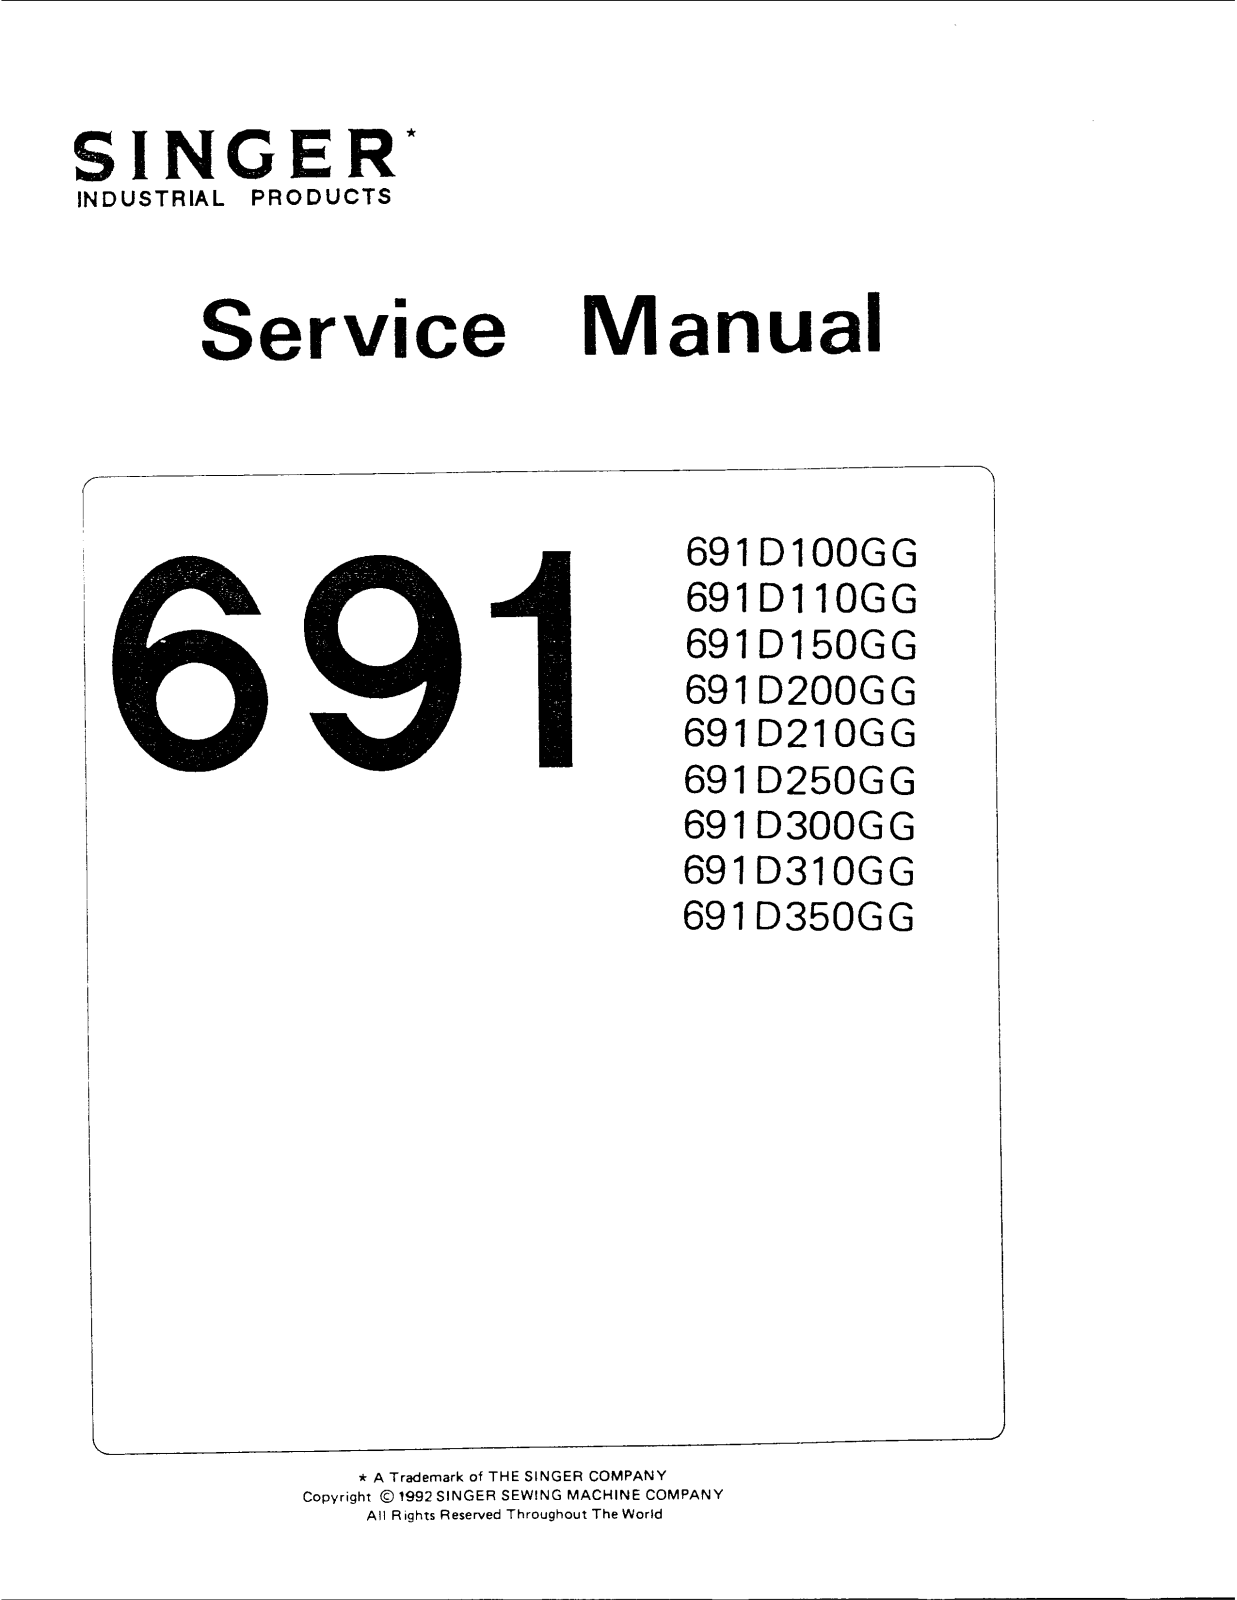 Singer 691D350GG, 691D310GG, 691D300GG, 691D250GG, 691D210GG Service Manual